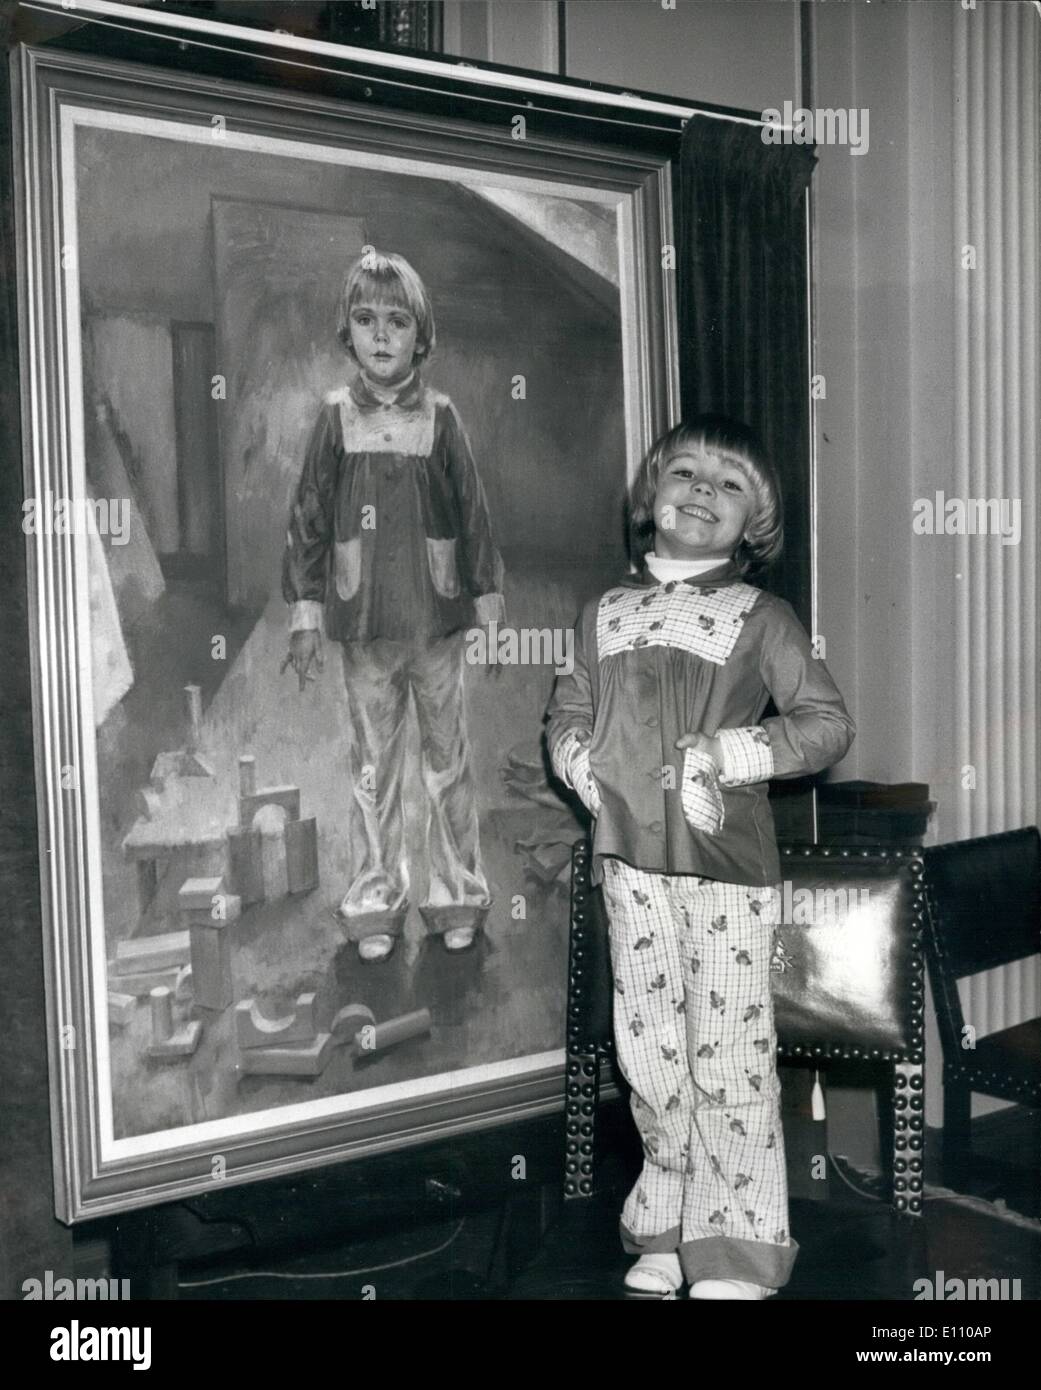 Nov. 11, 1974 - QUATTRO ANNI DI ''Miss pere 1974'' svela il suo ritratto di quattro anni di Katie Goodwin, di Stalybridge, Chesire, ha inaugurato oggi il suo ritratto a pittori' Hall nella città di Londra, come il vincitore del ben noto 'Miss pere'' la concorrenza. Il ritratto è stato dipinto da donna artista, Giugno Mendoza, R.O.I., R.P., la prima donna artista incaricato di dipingere il vincitore. La foto mostra: 4 anno vecchio Kattie Goodwin fa buon uso di una sedia per visualizzare il suo ritratto dopo la cerimonia di inaugurazione a pittori' Hall di oggi. Foto Stock